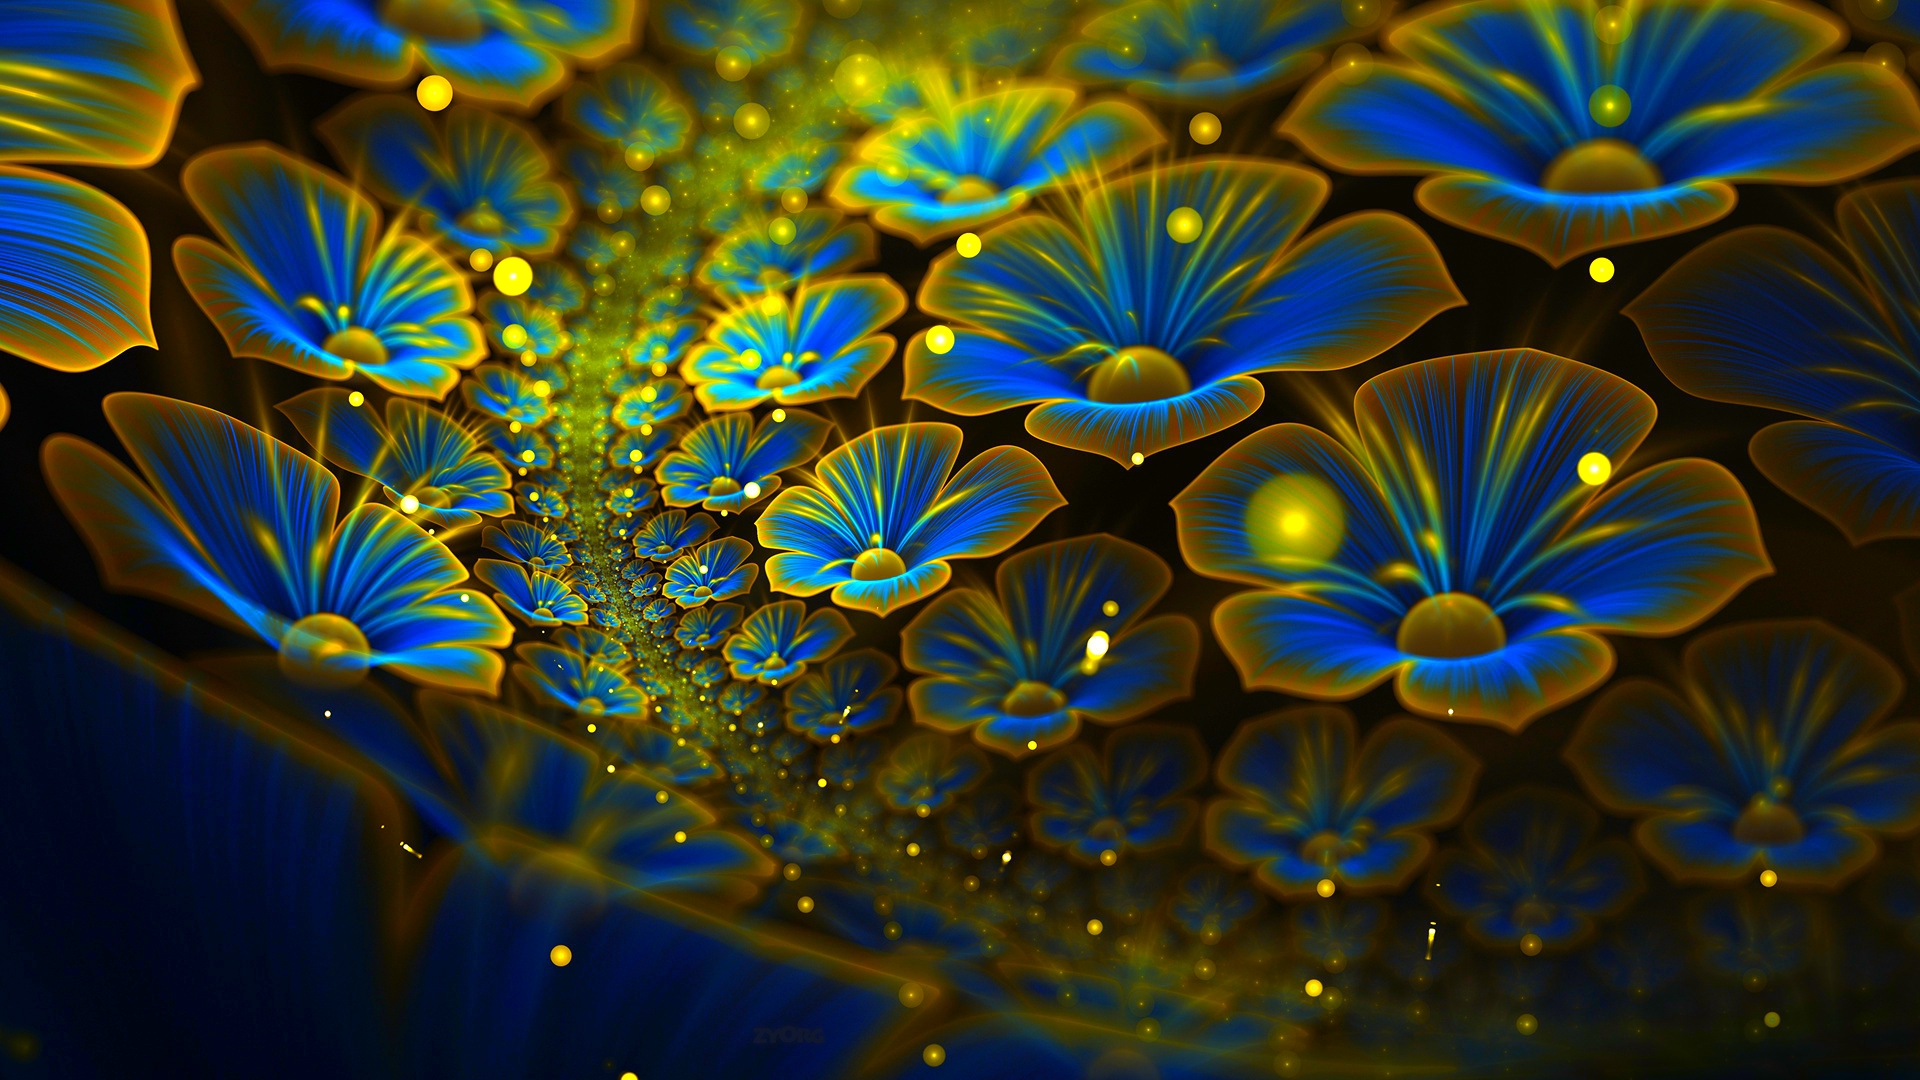 Abstract fractal cg digital art 3d colors wallpaper 1920x1080